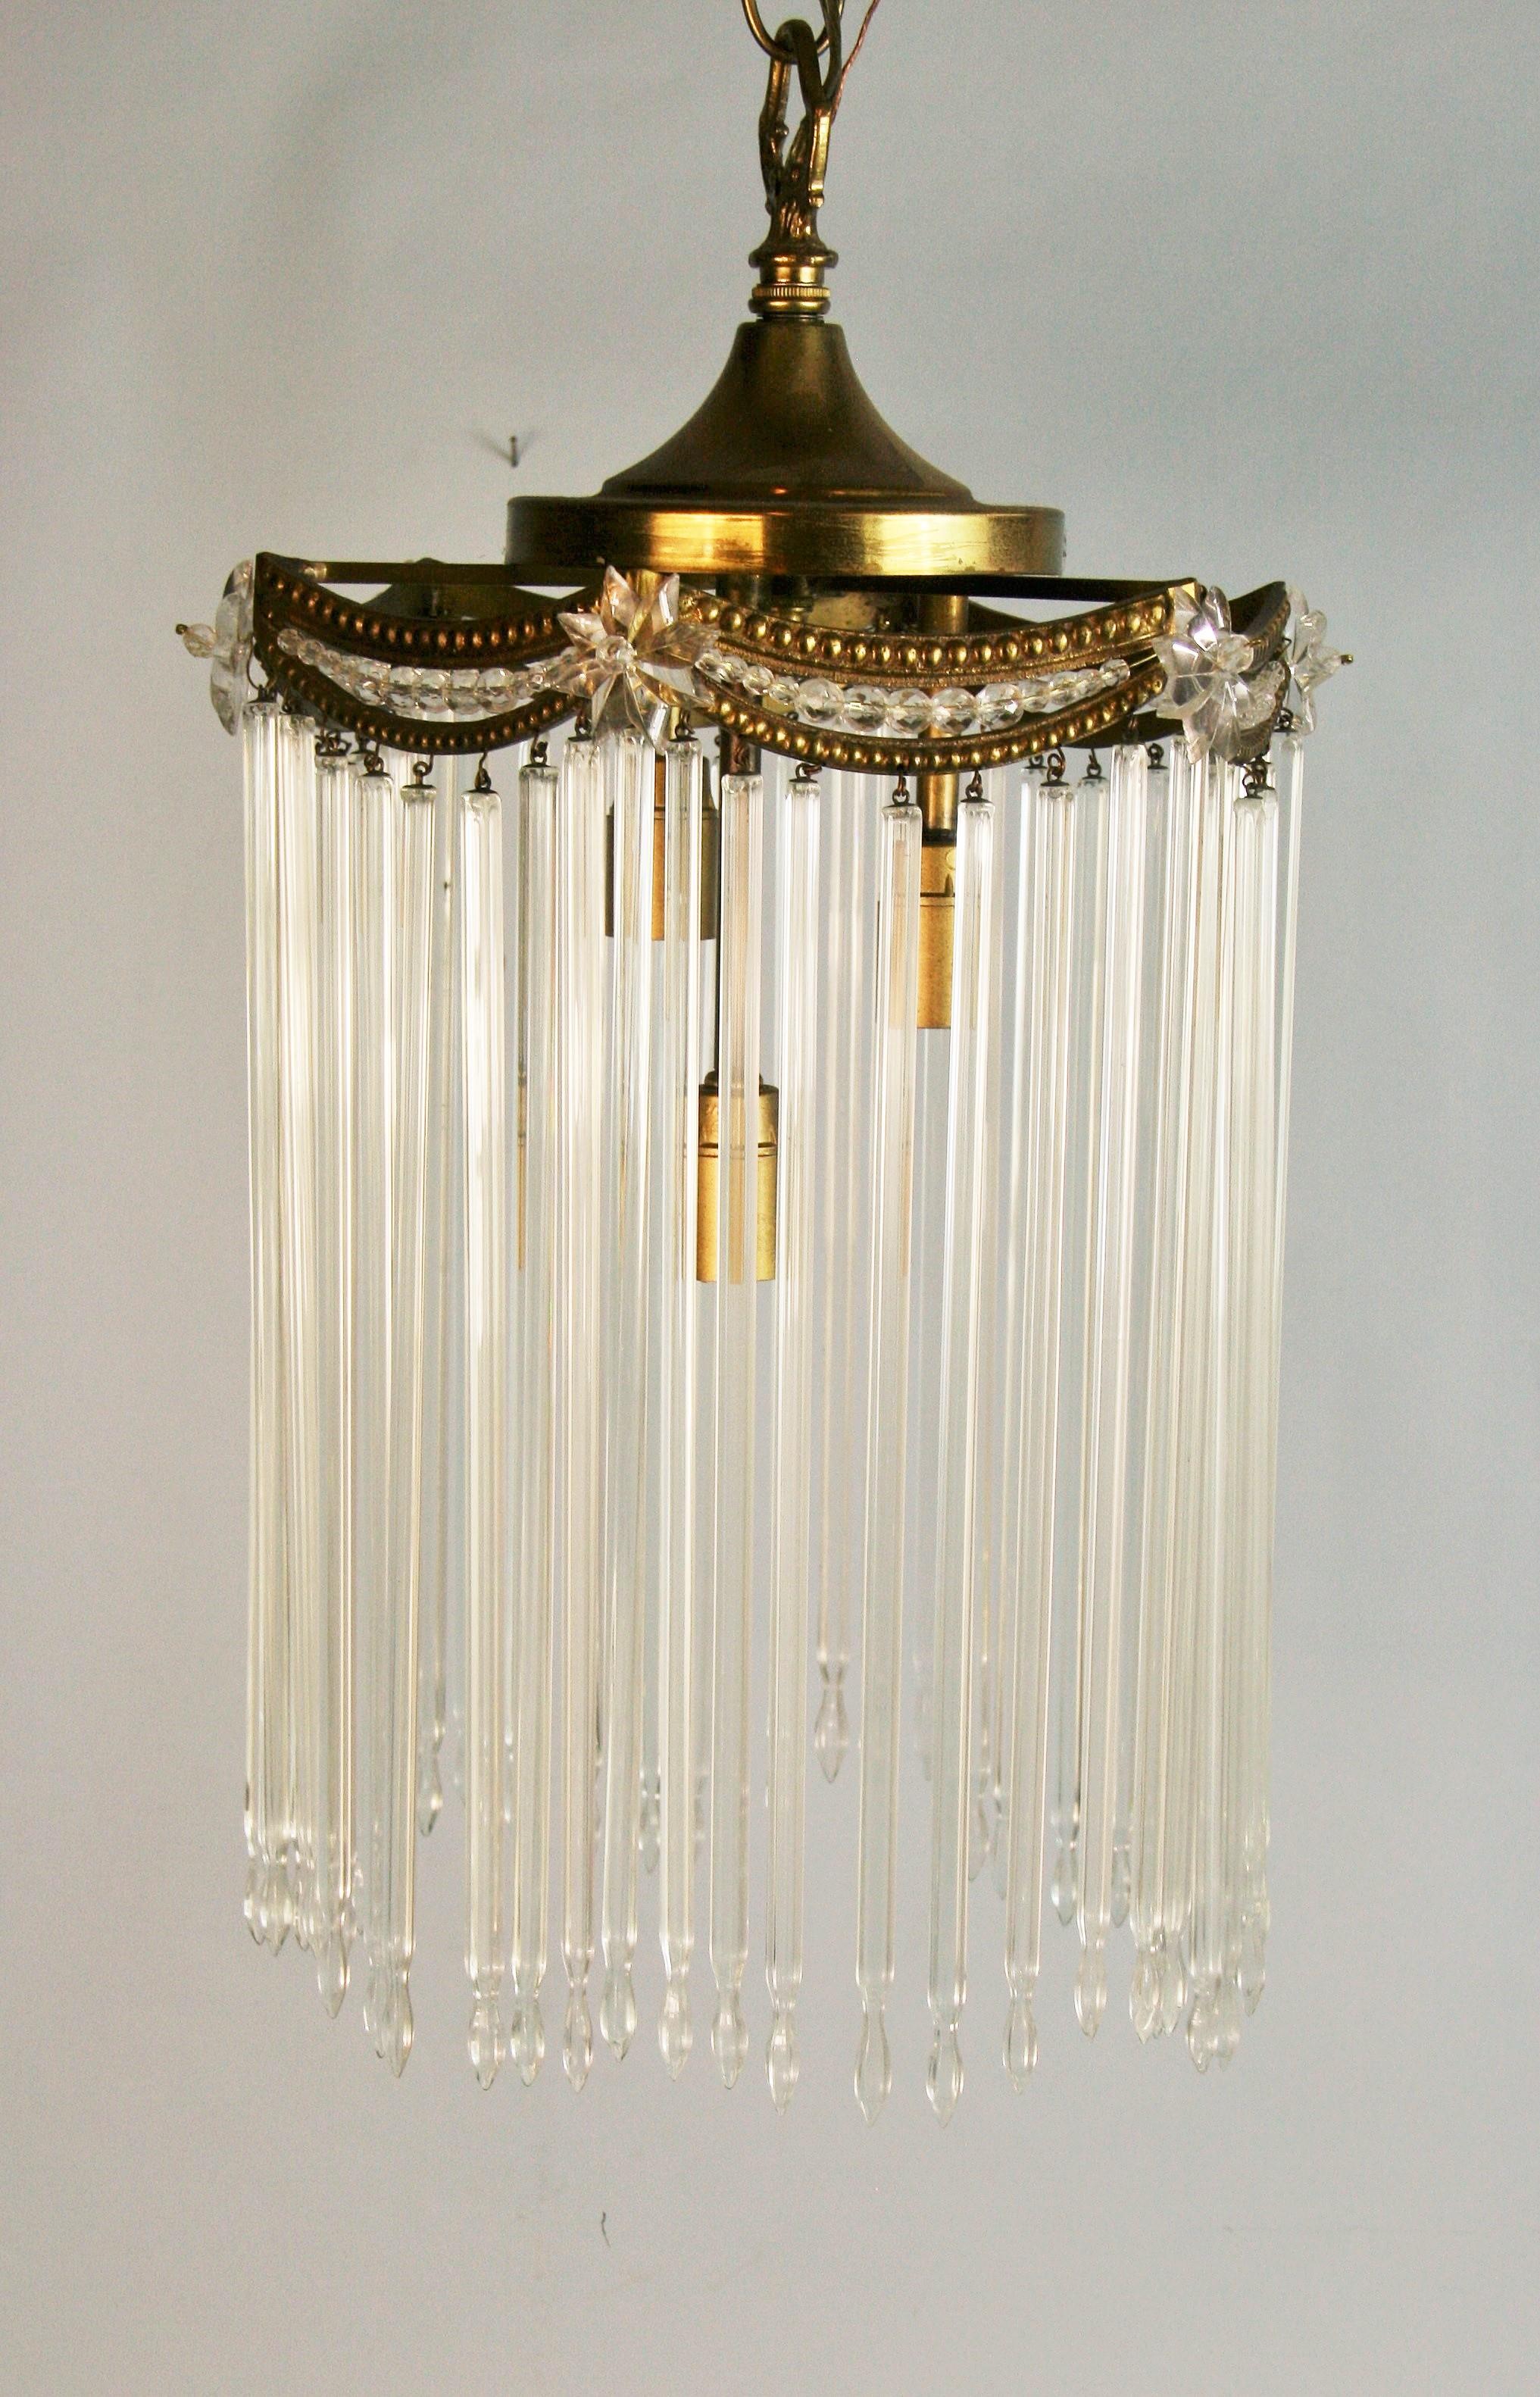 1612 Antique  pendentif en cristal autrichien à trois lumières internes.
Accepte 3 ampoules de 40 watts de type candélabre
Recâblé.